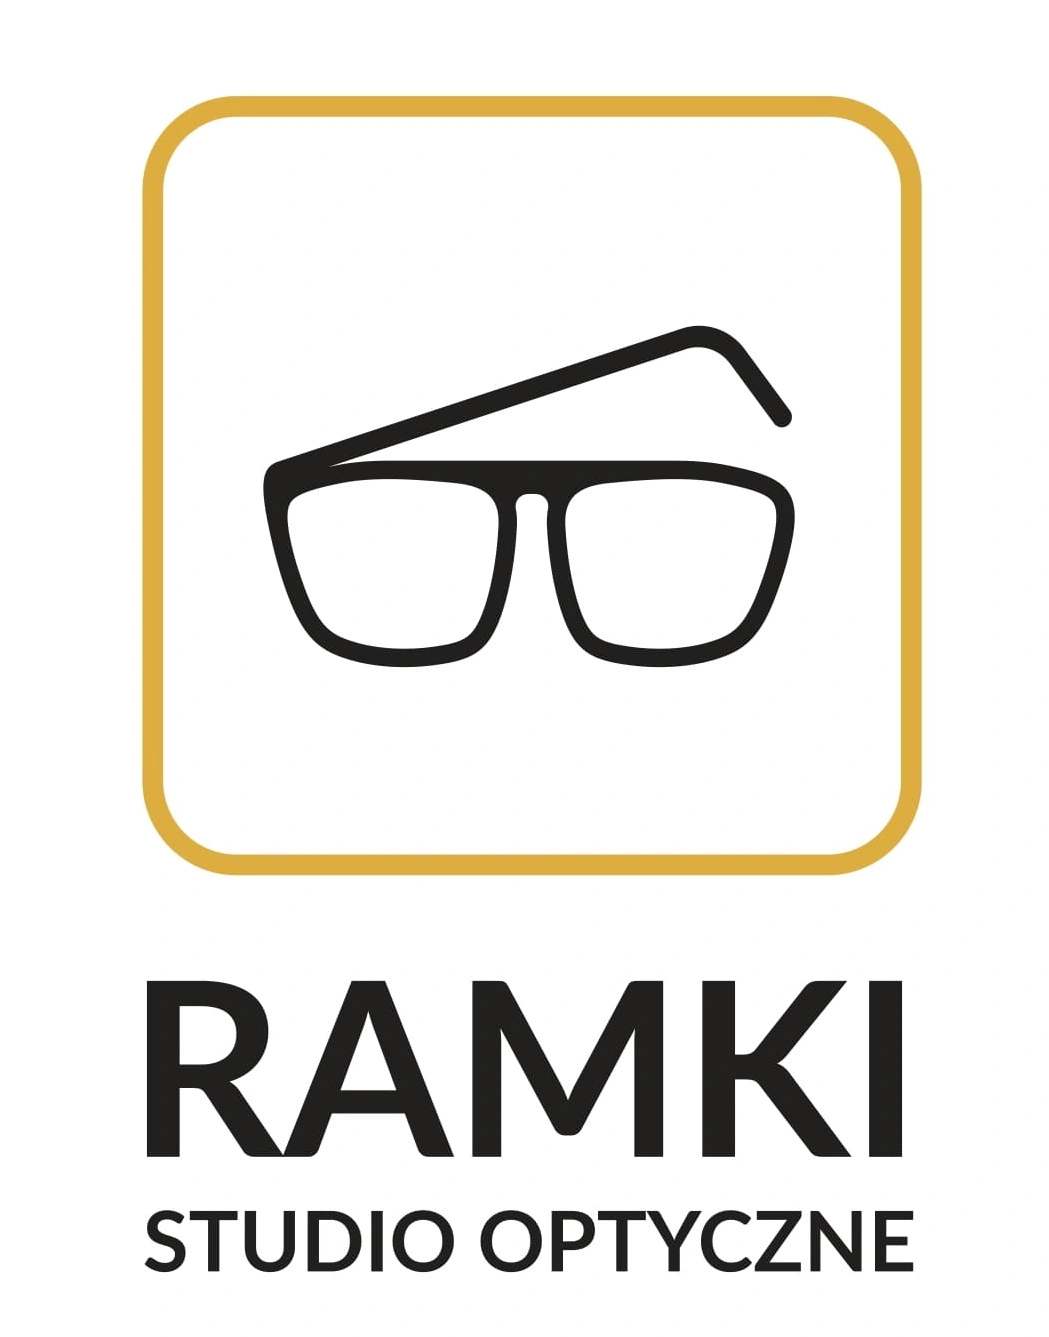 Optyk Łódź – Ramki Studio Optyczne